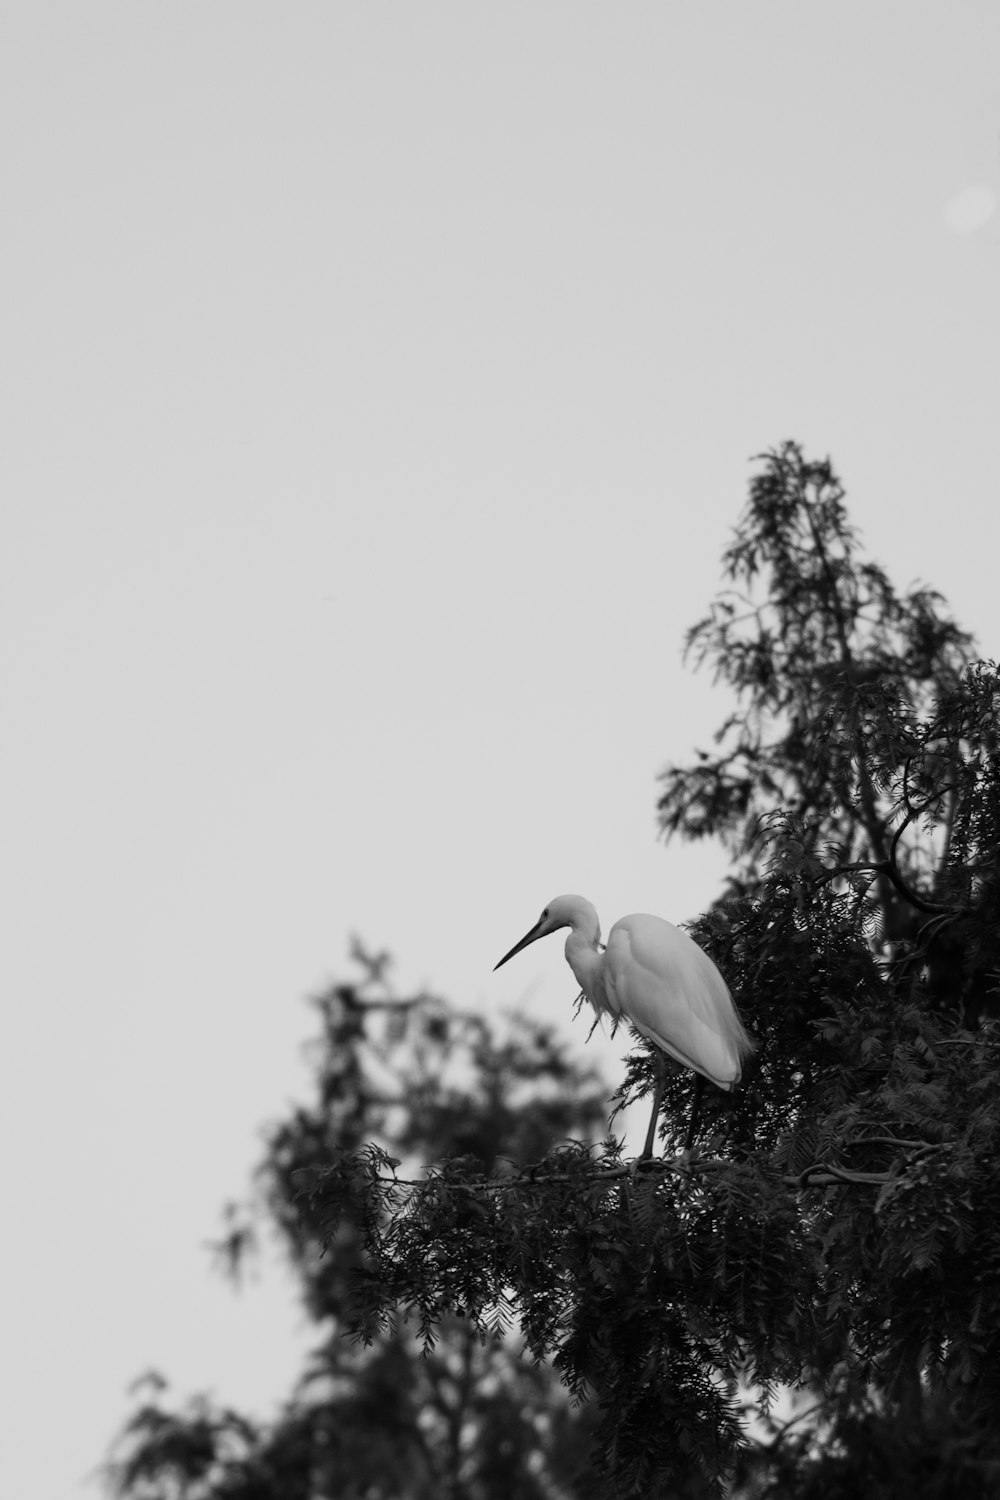 Cicogna bianca che vola durante il giorno